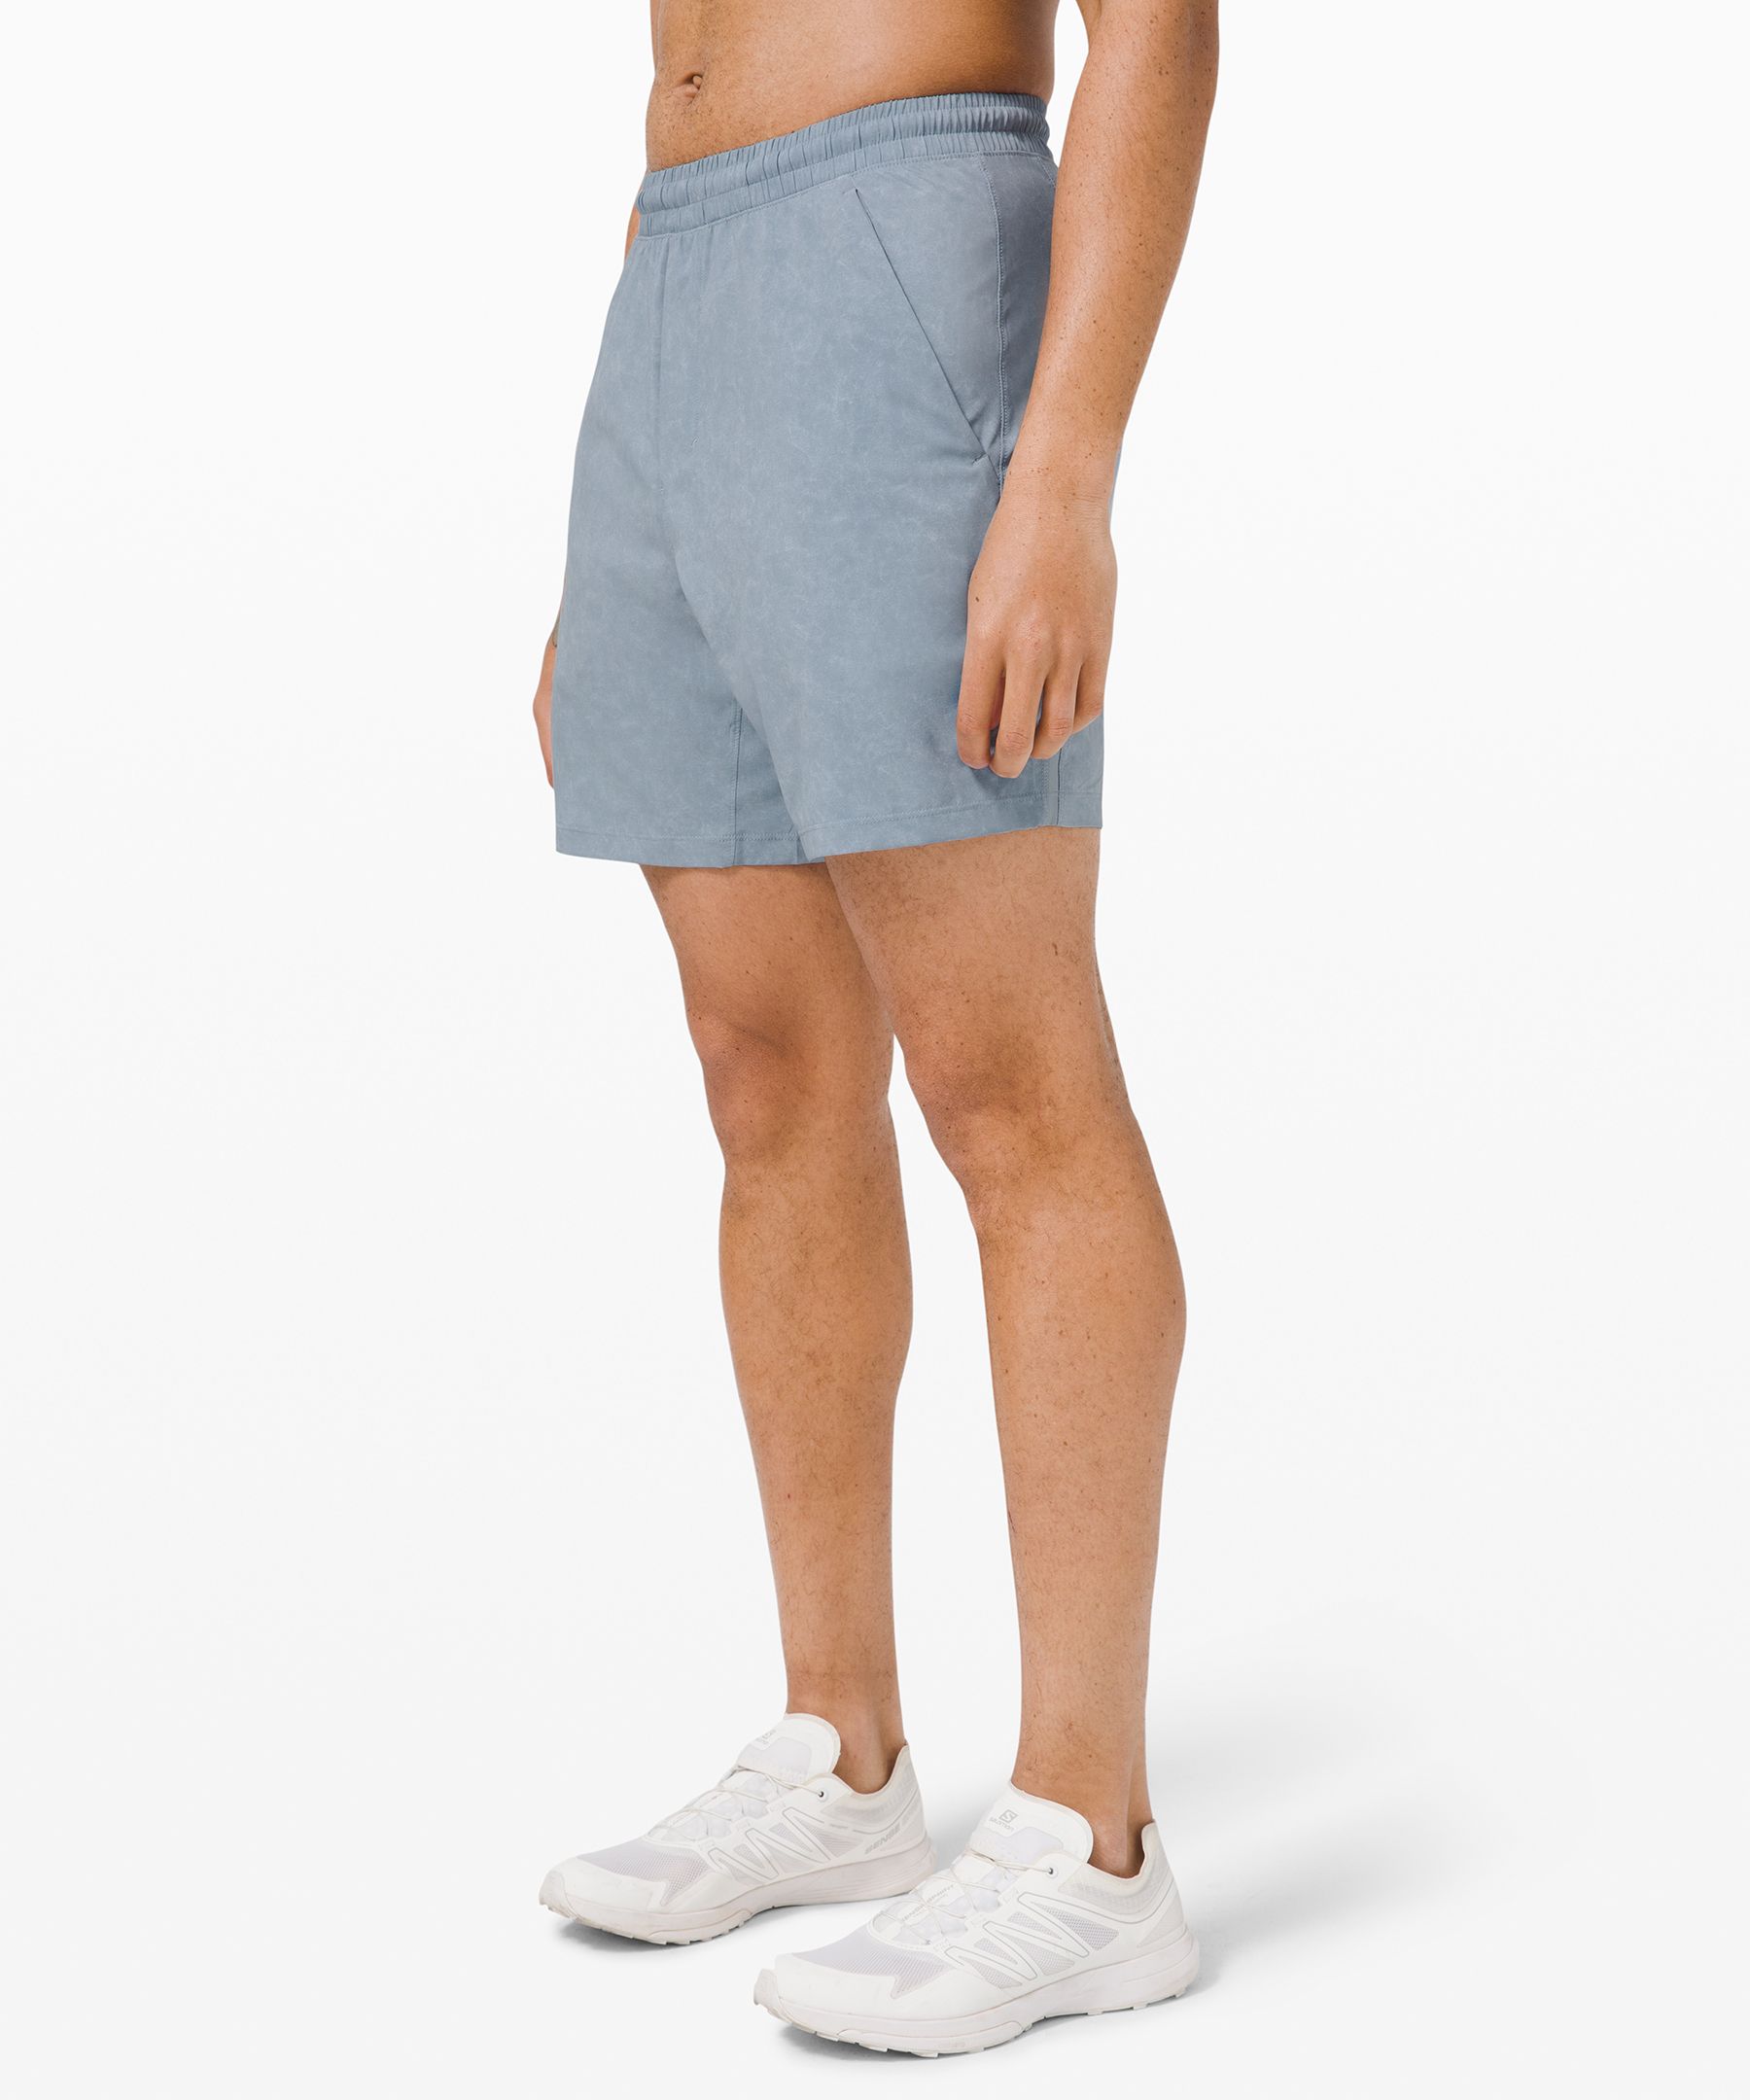 lululemon men's shorts 7 inch